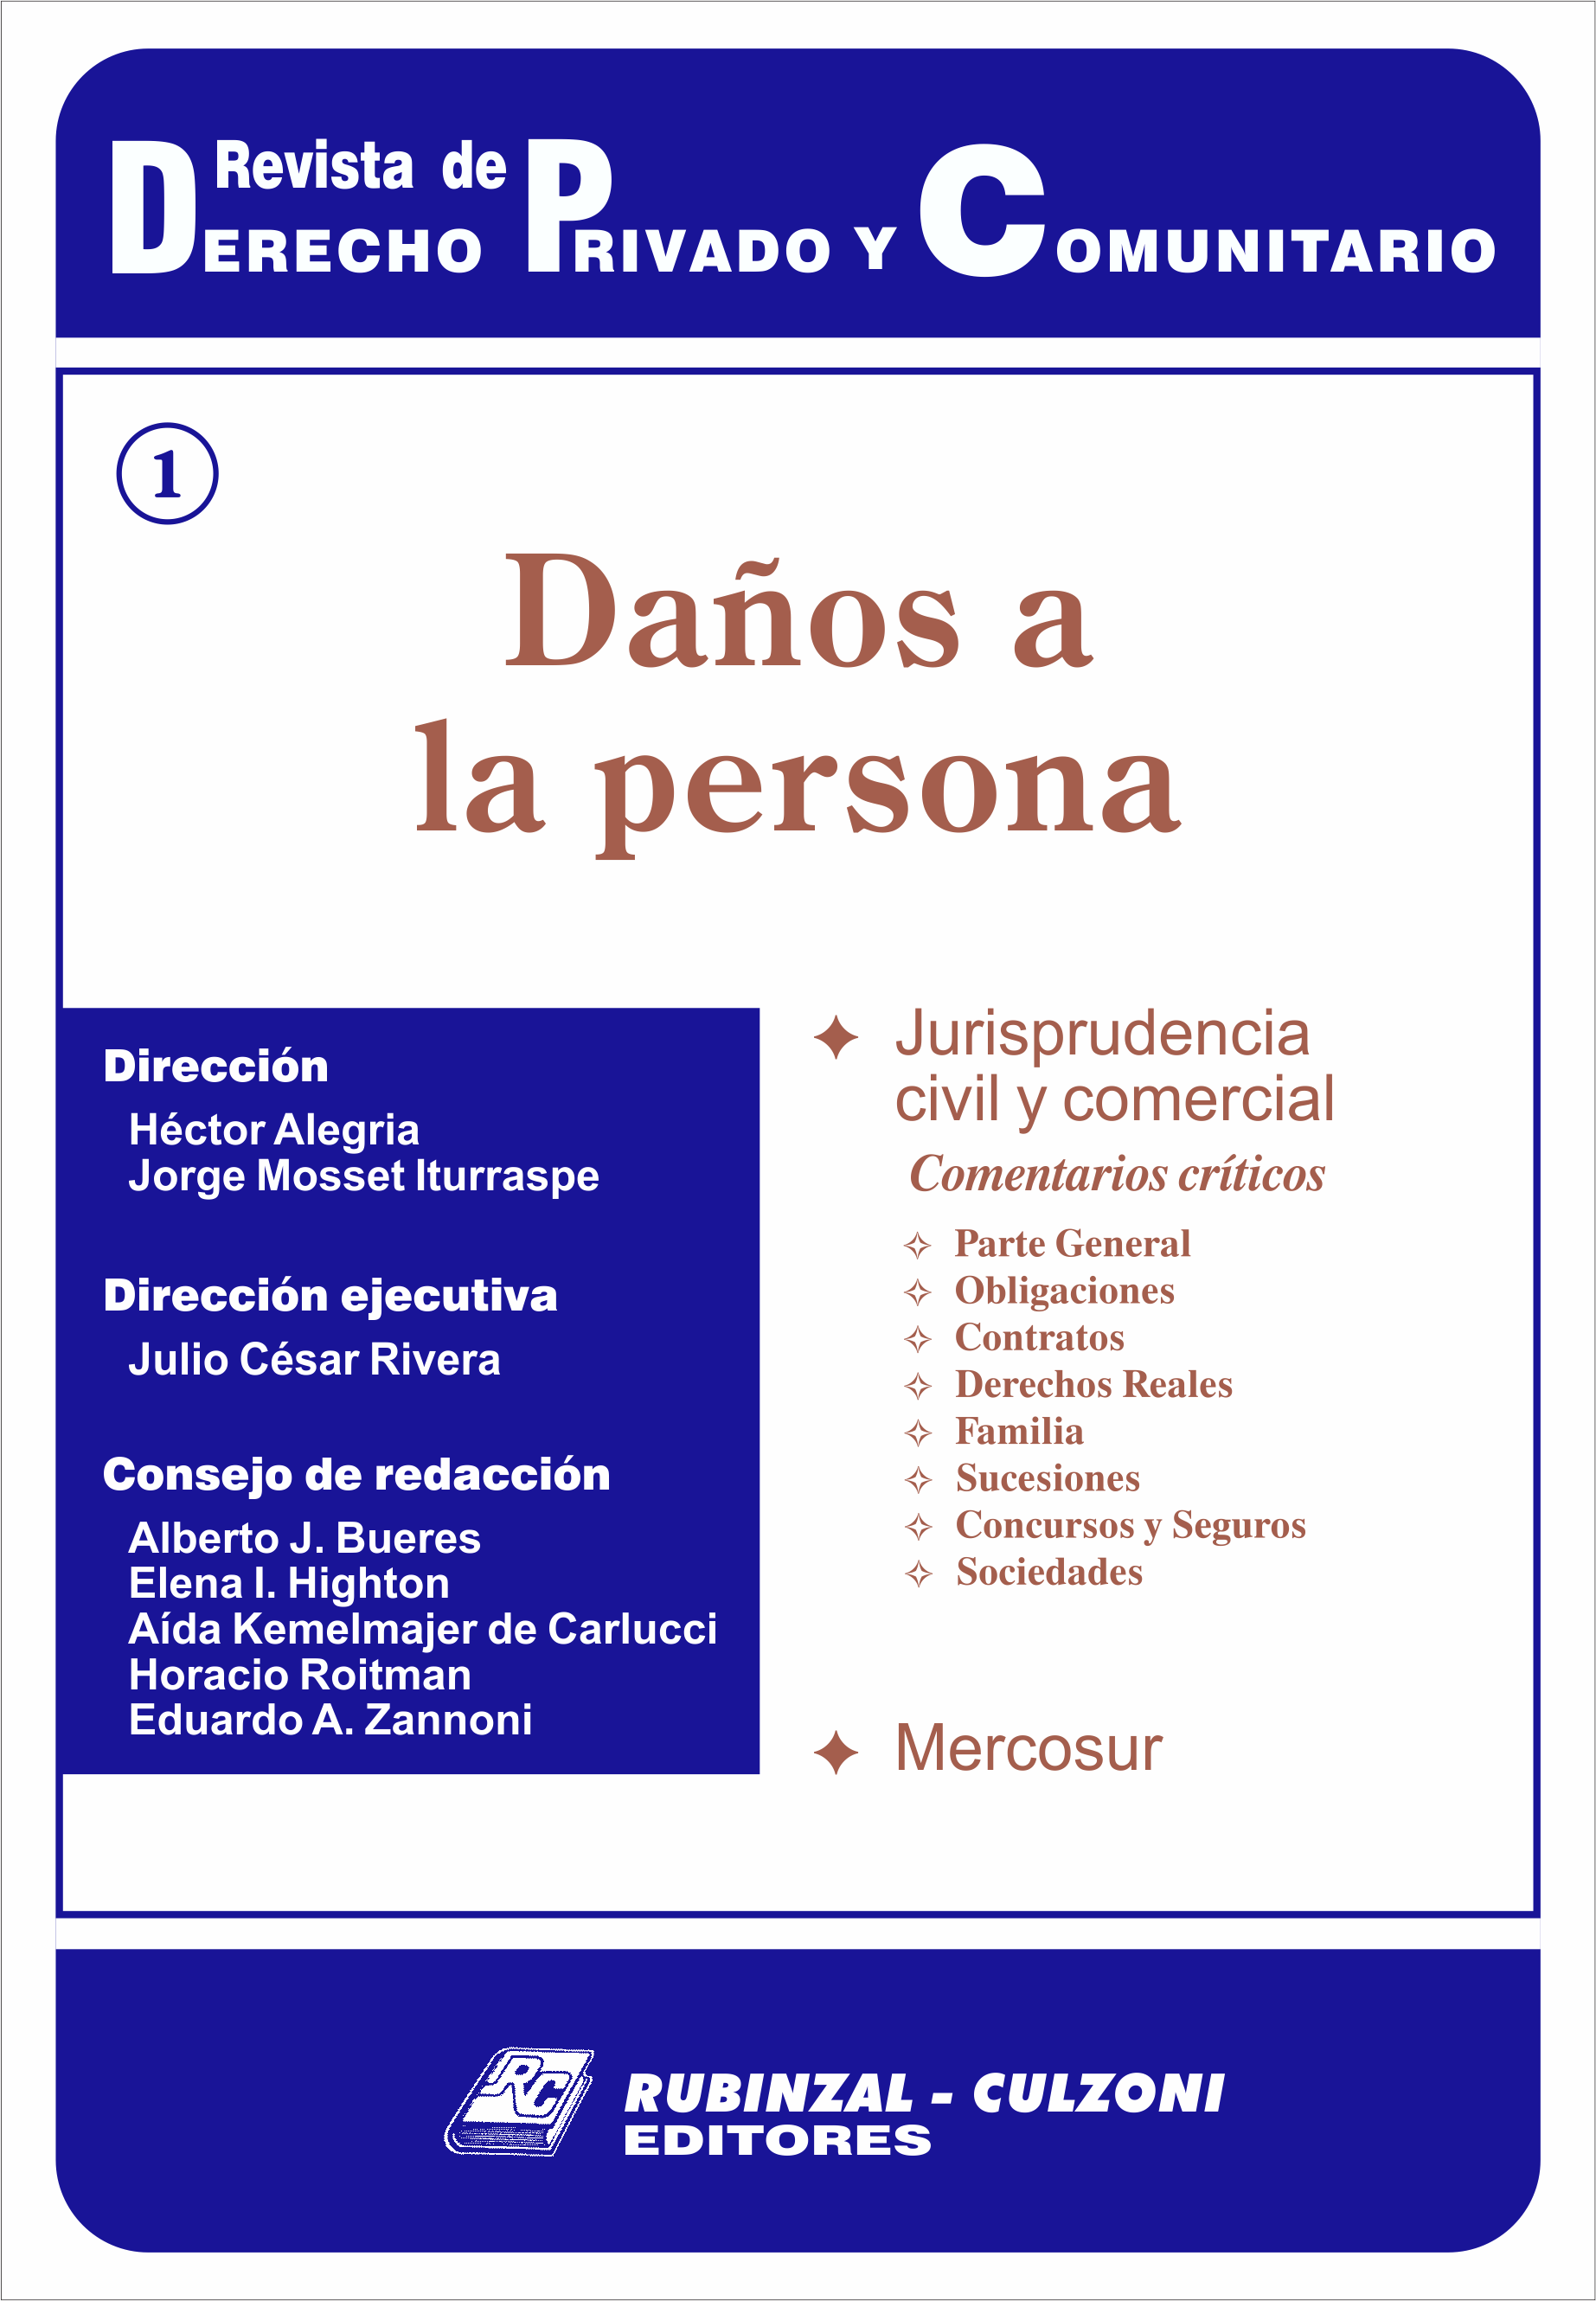 Revista de Derecho Privado y Comunitario - Daños a la persona.